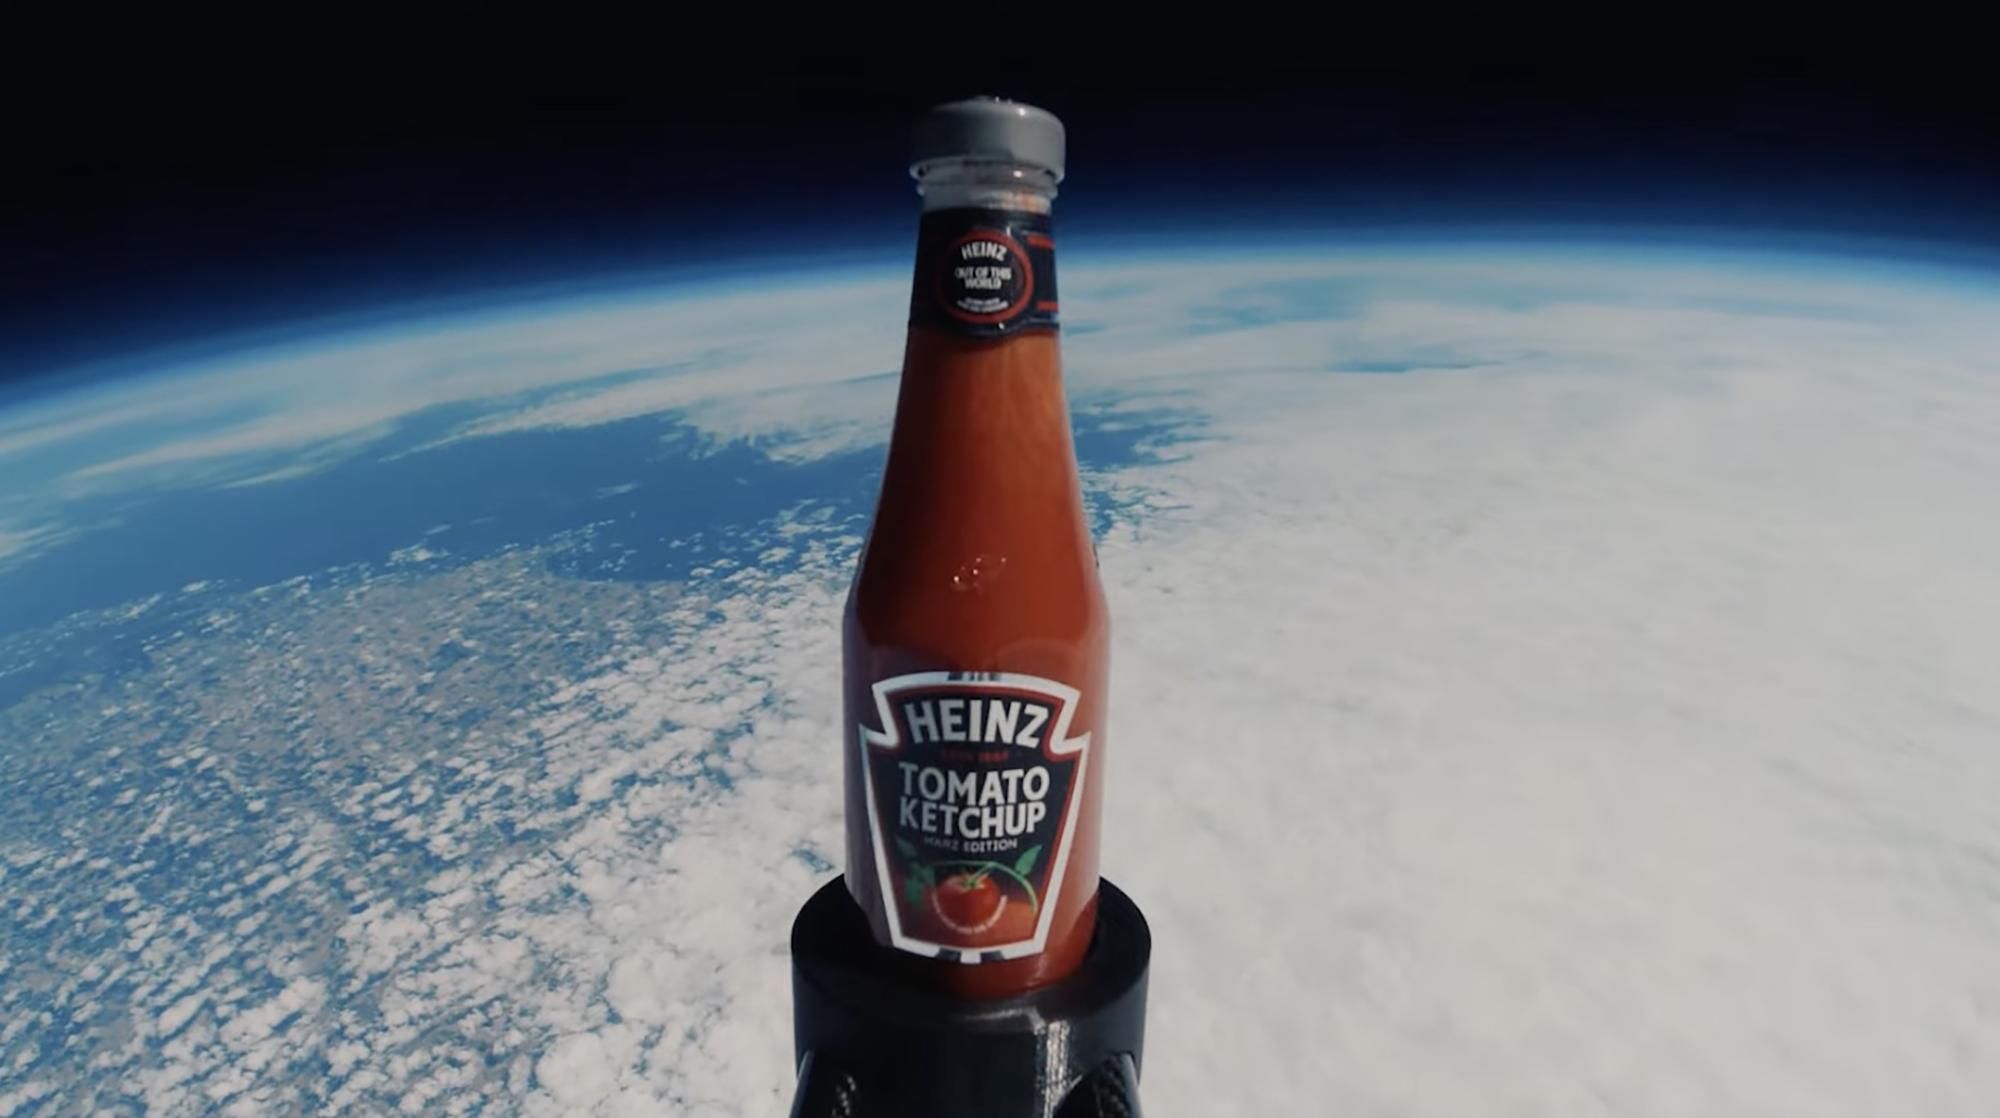 Heinz виготовила кетчуп з помідорів, вирощених на "марсіанському" ґрунті - Тренди